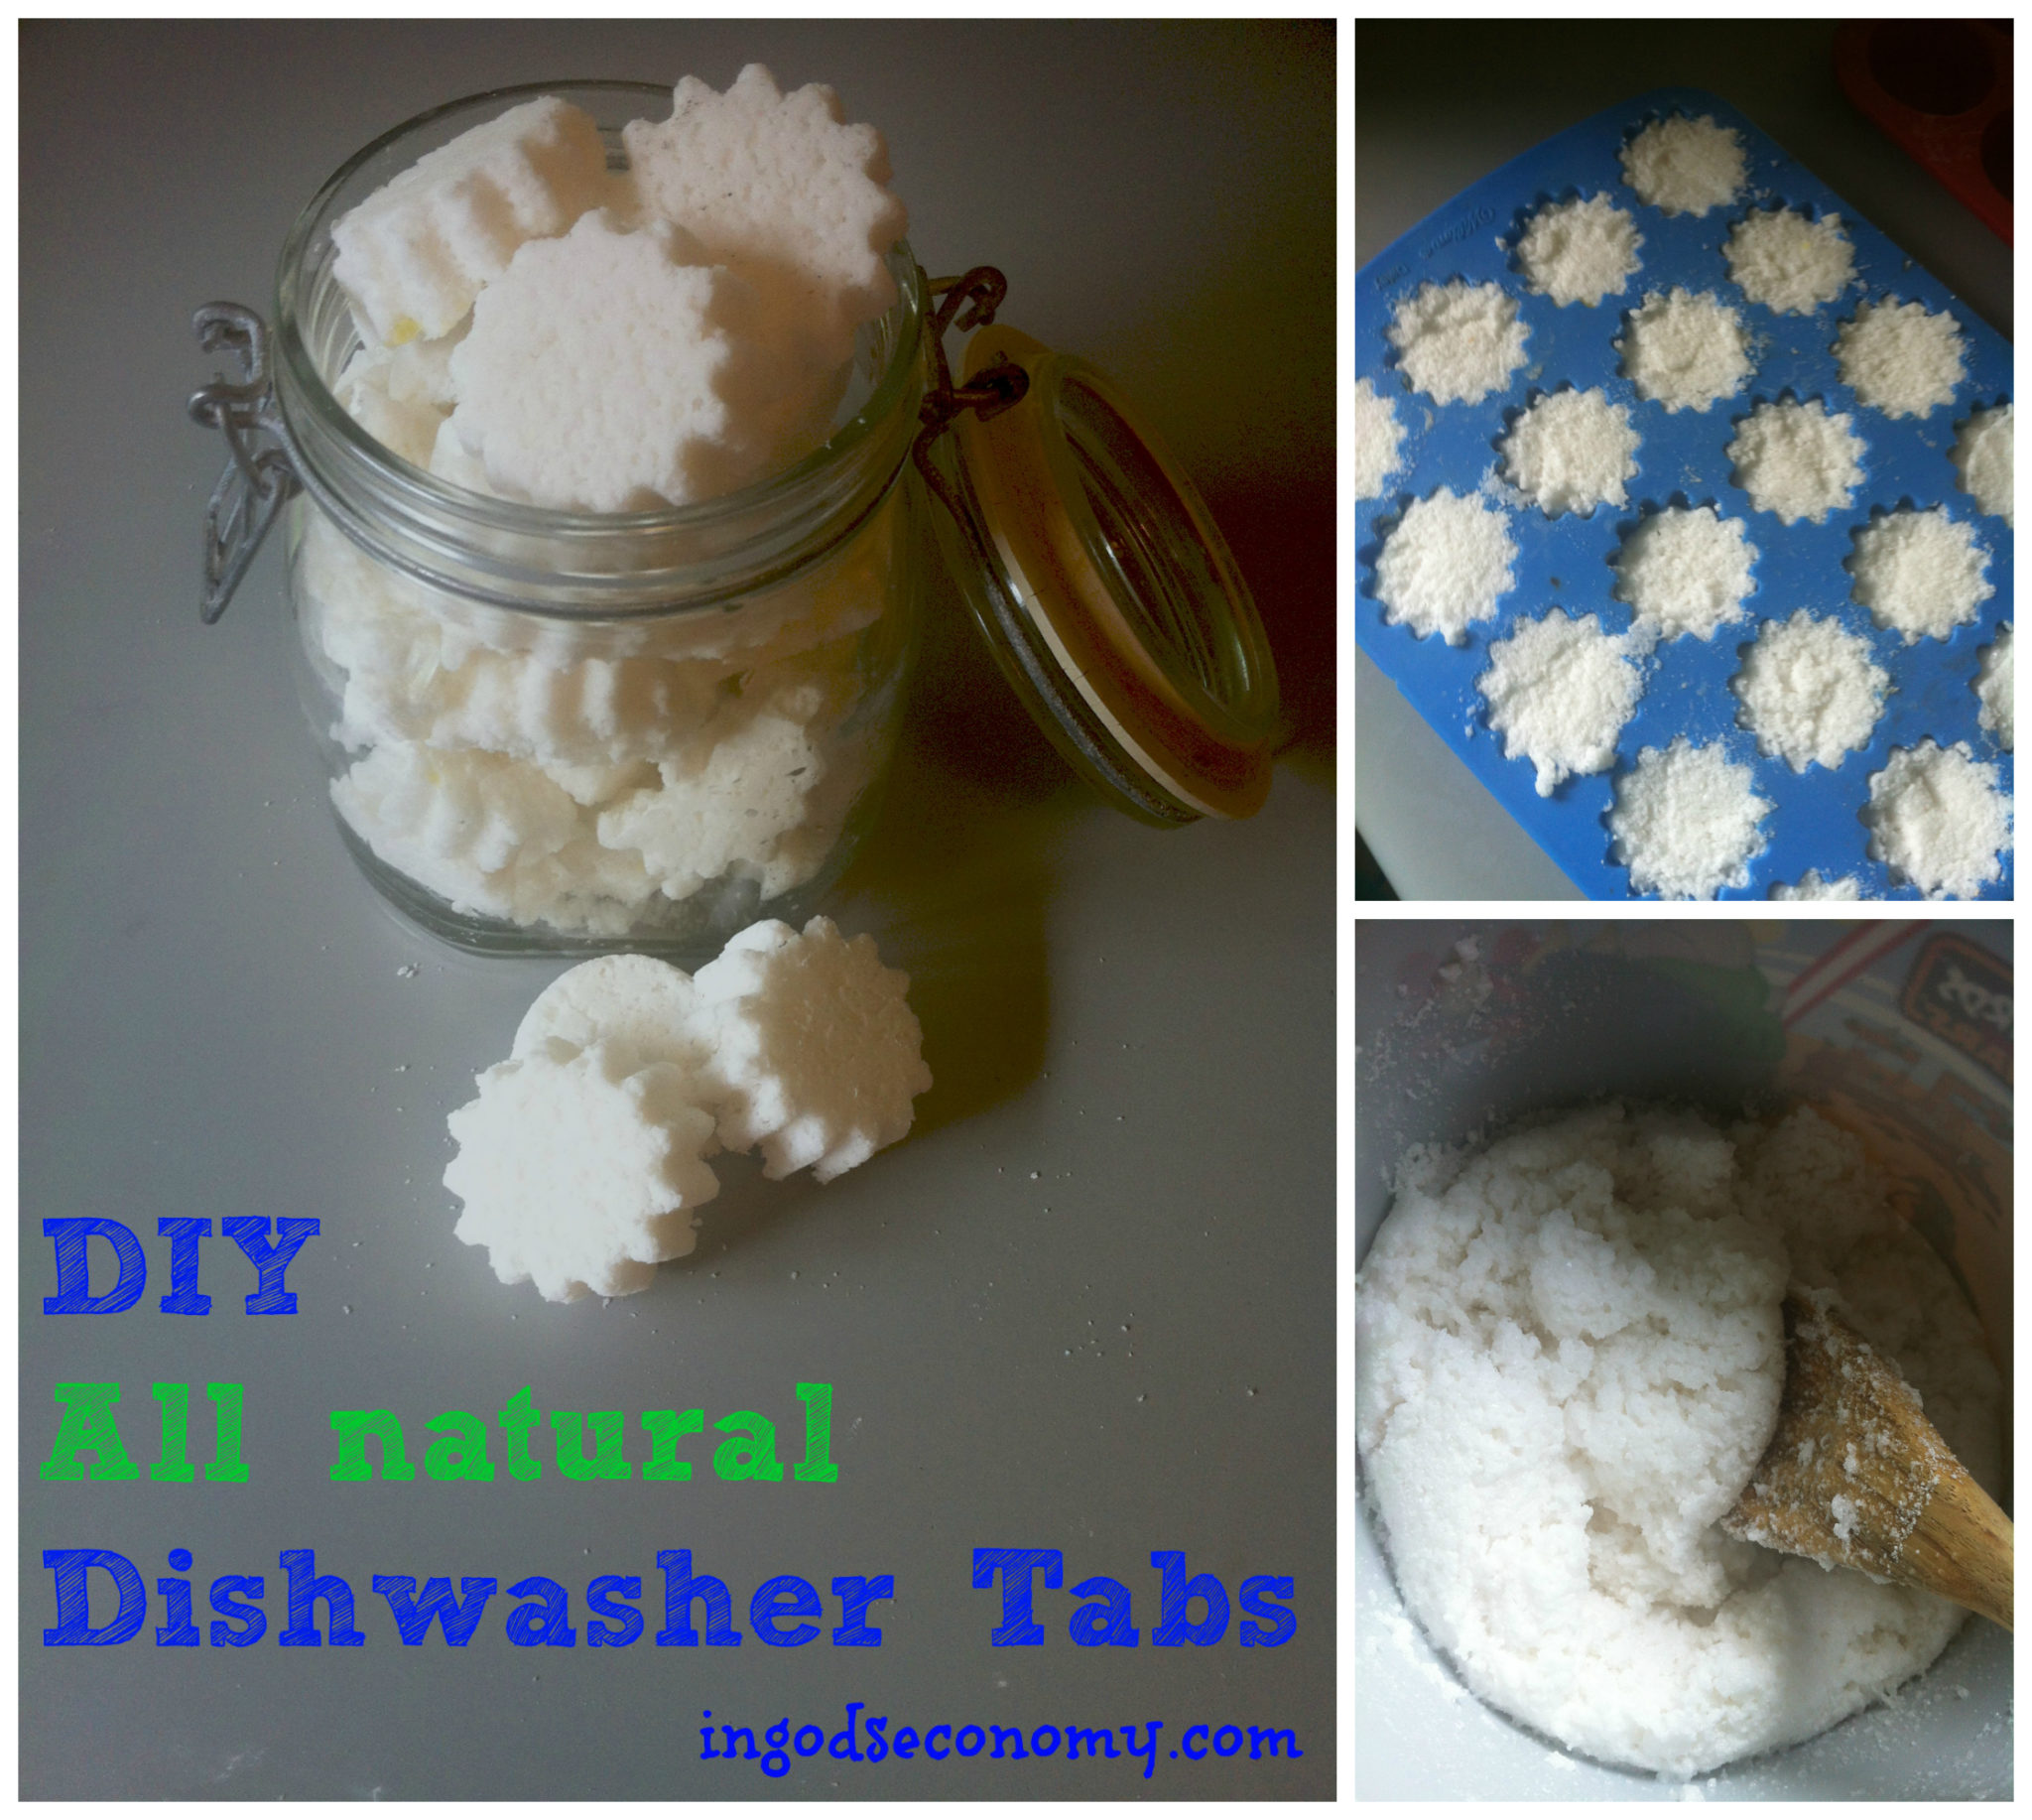 DIY All-Natural Dishwasher Detergent Tablets!